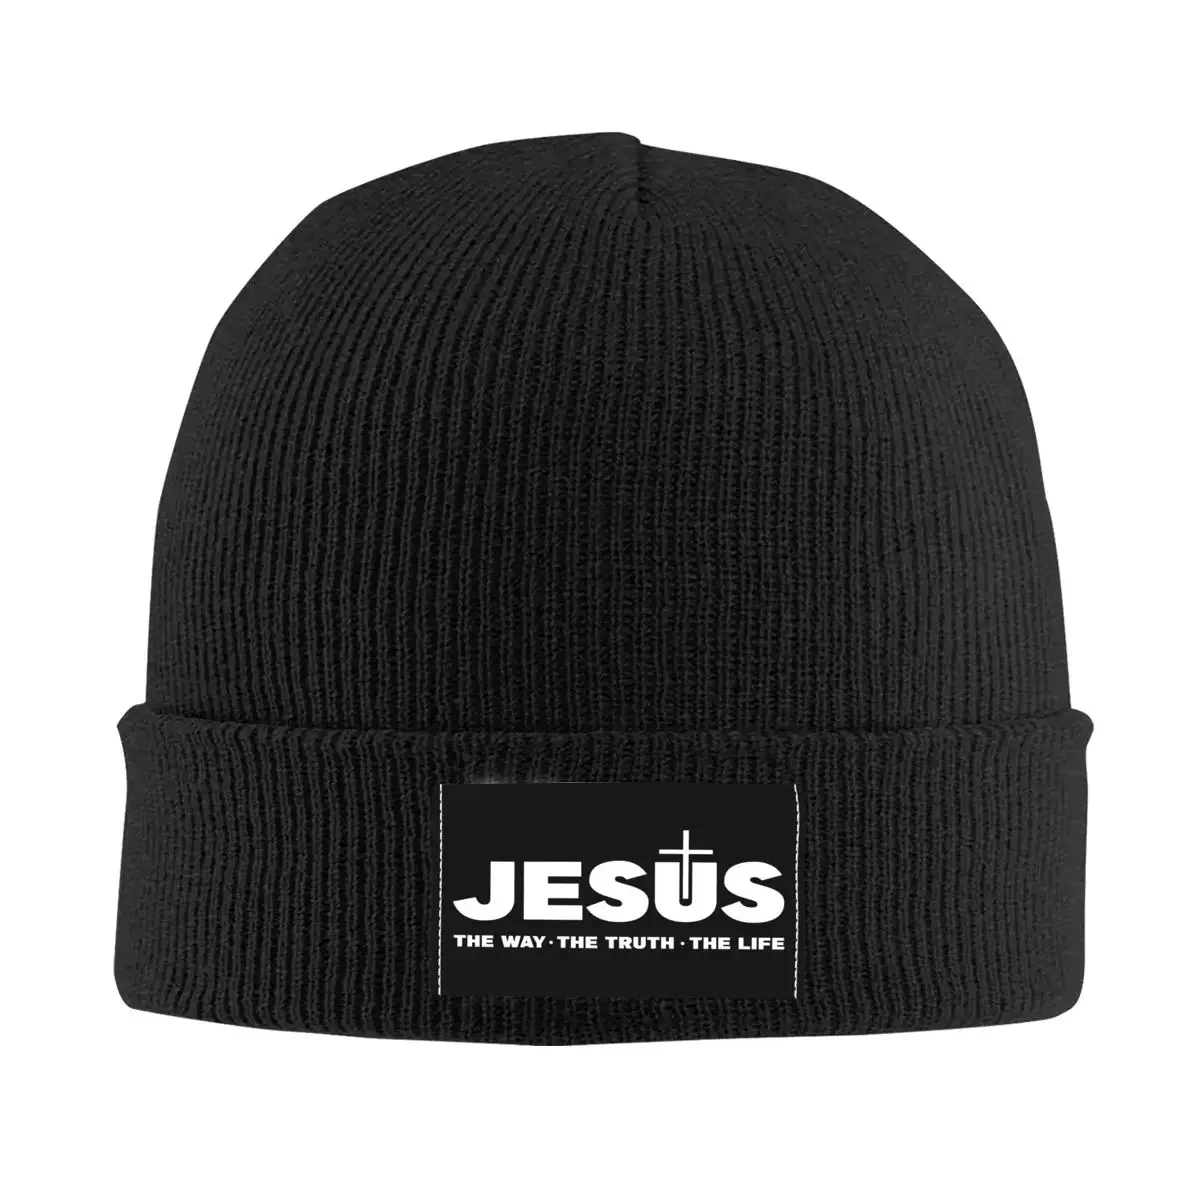 

Шапочки с Иисусом Христа, шапки-бини, зимние теплые вязаные шапки, унисекс, религия, христианская вера, шляпы, головные уборы